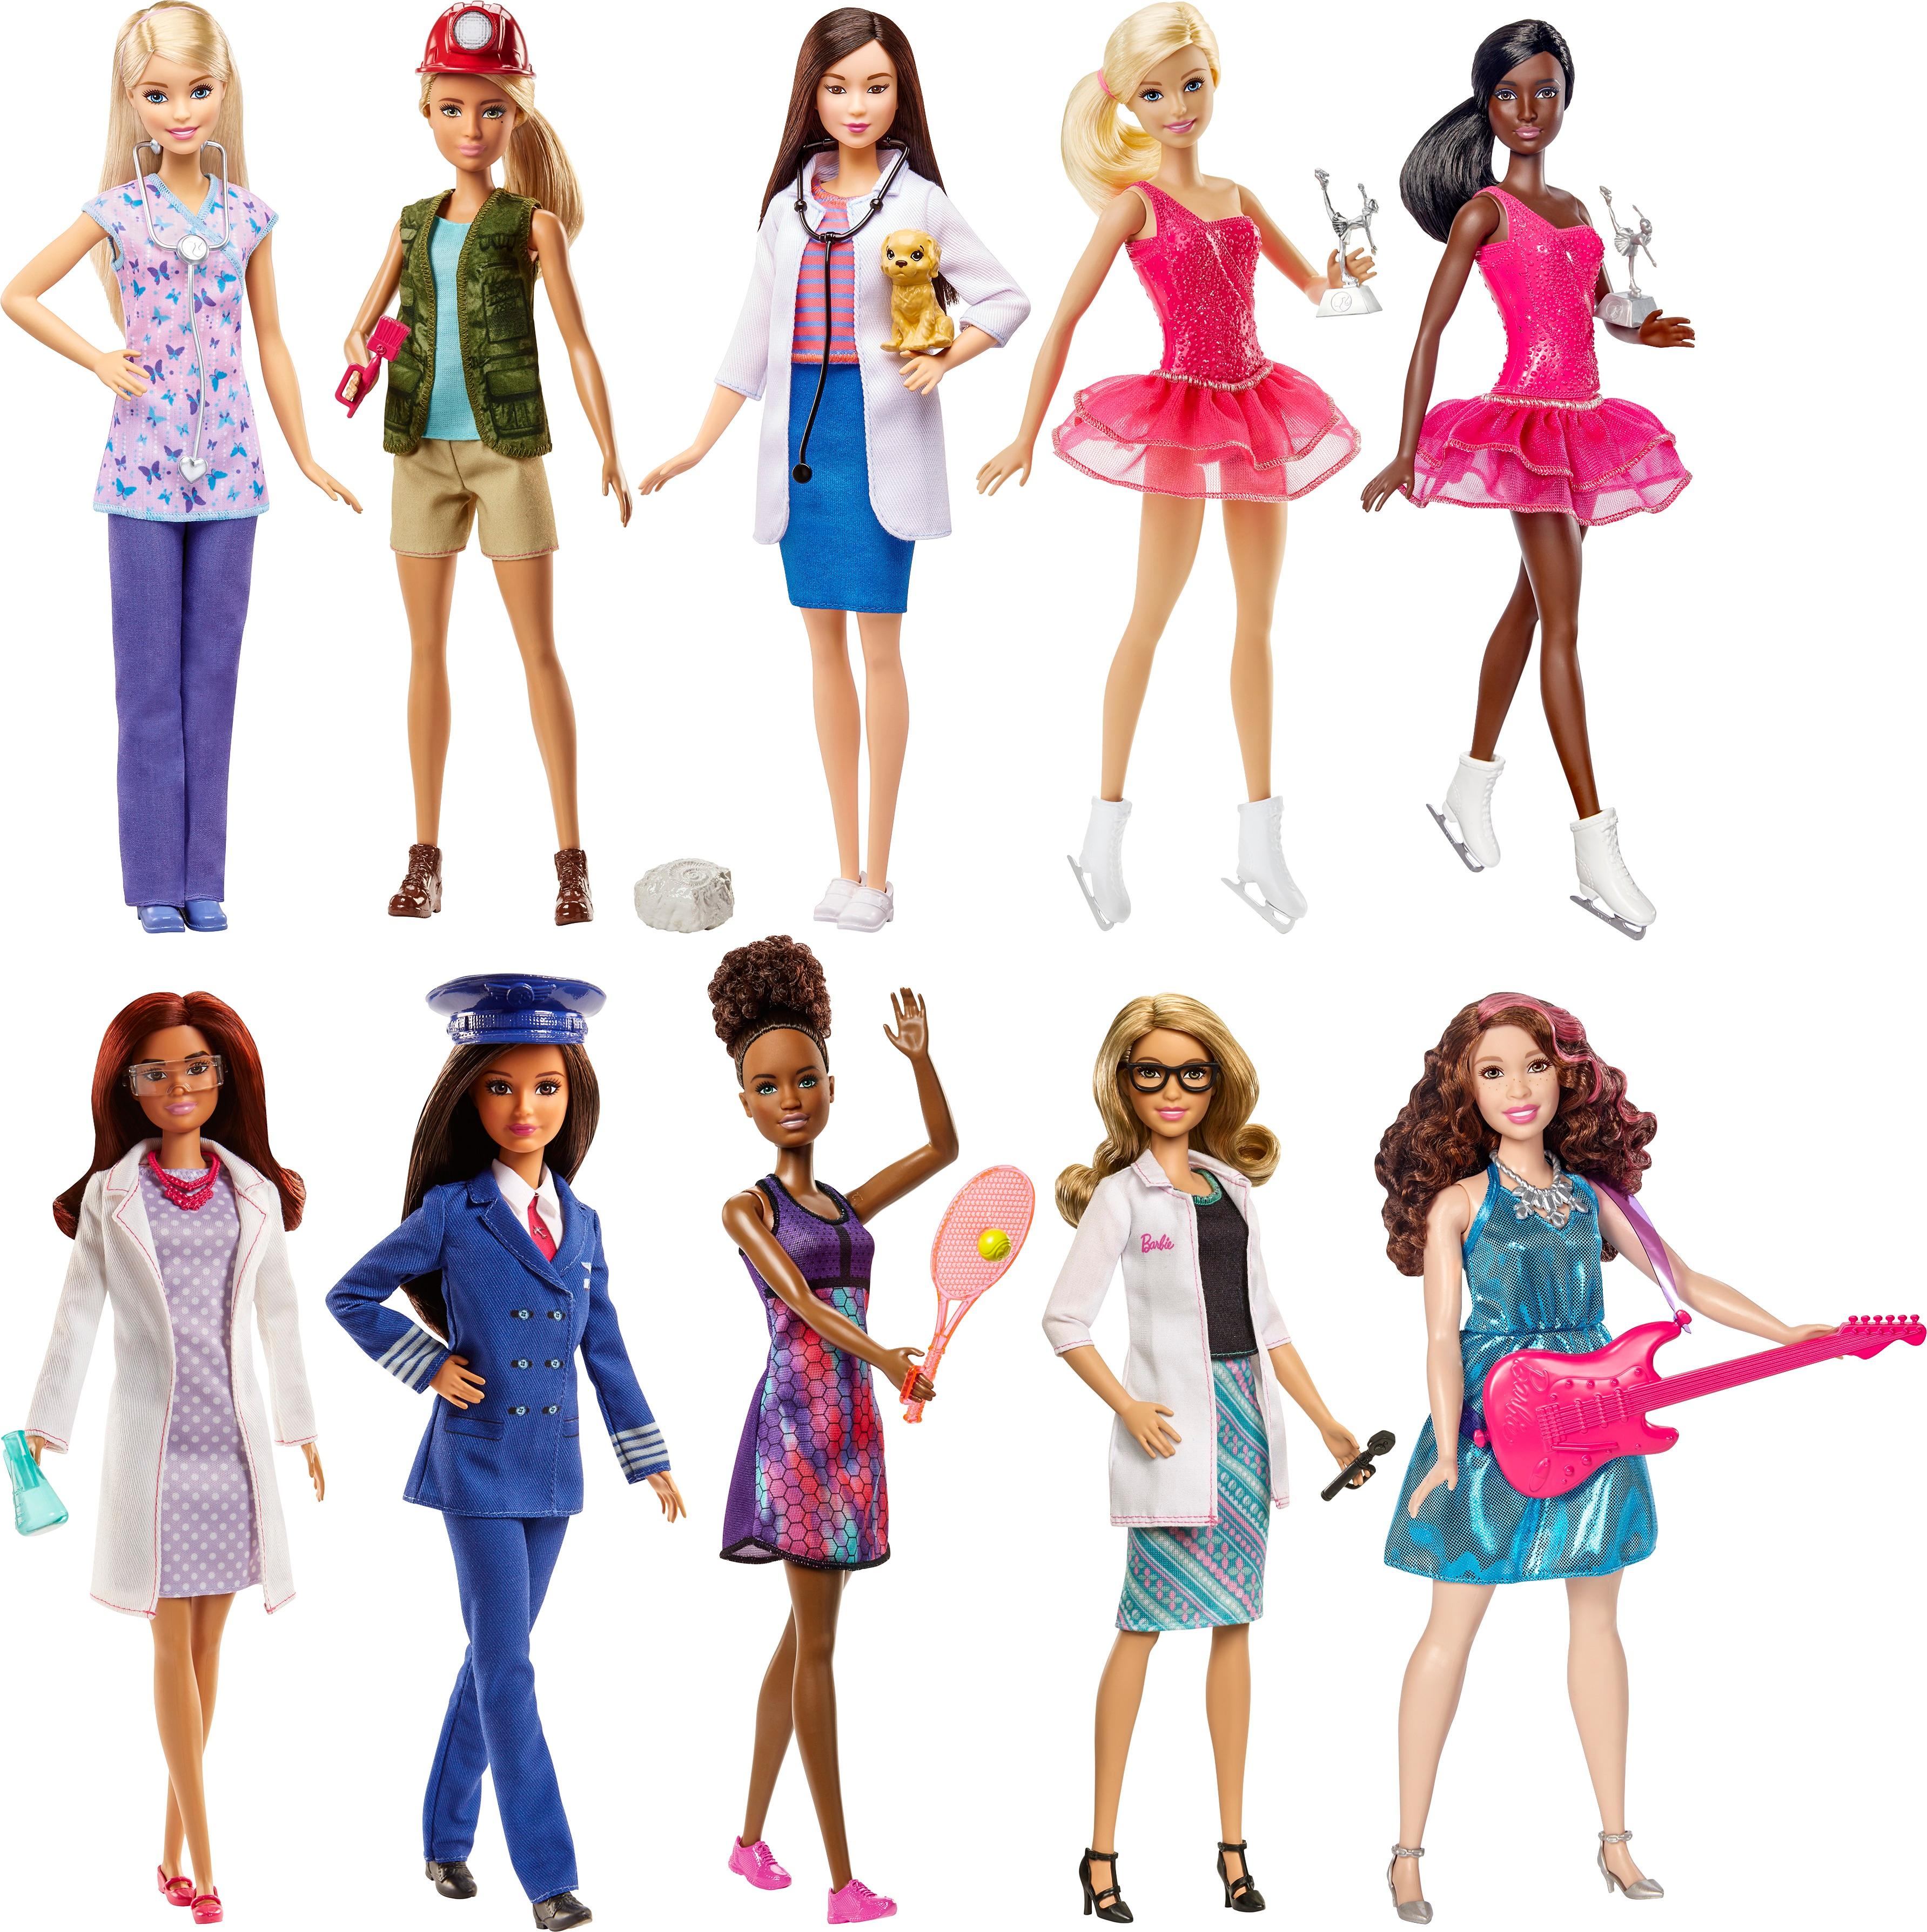 Mattel Barbie Career Doll Styles May Vary DVF50 - Best Buy